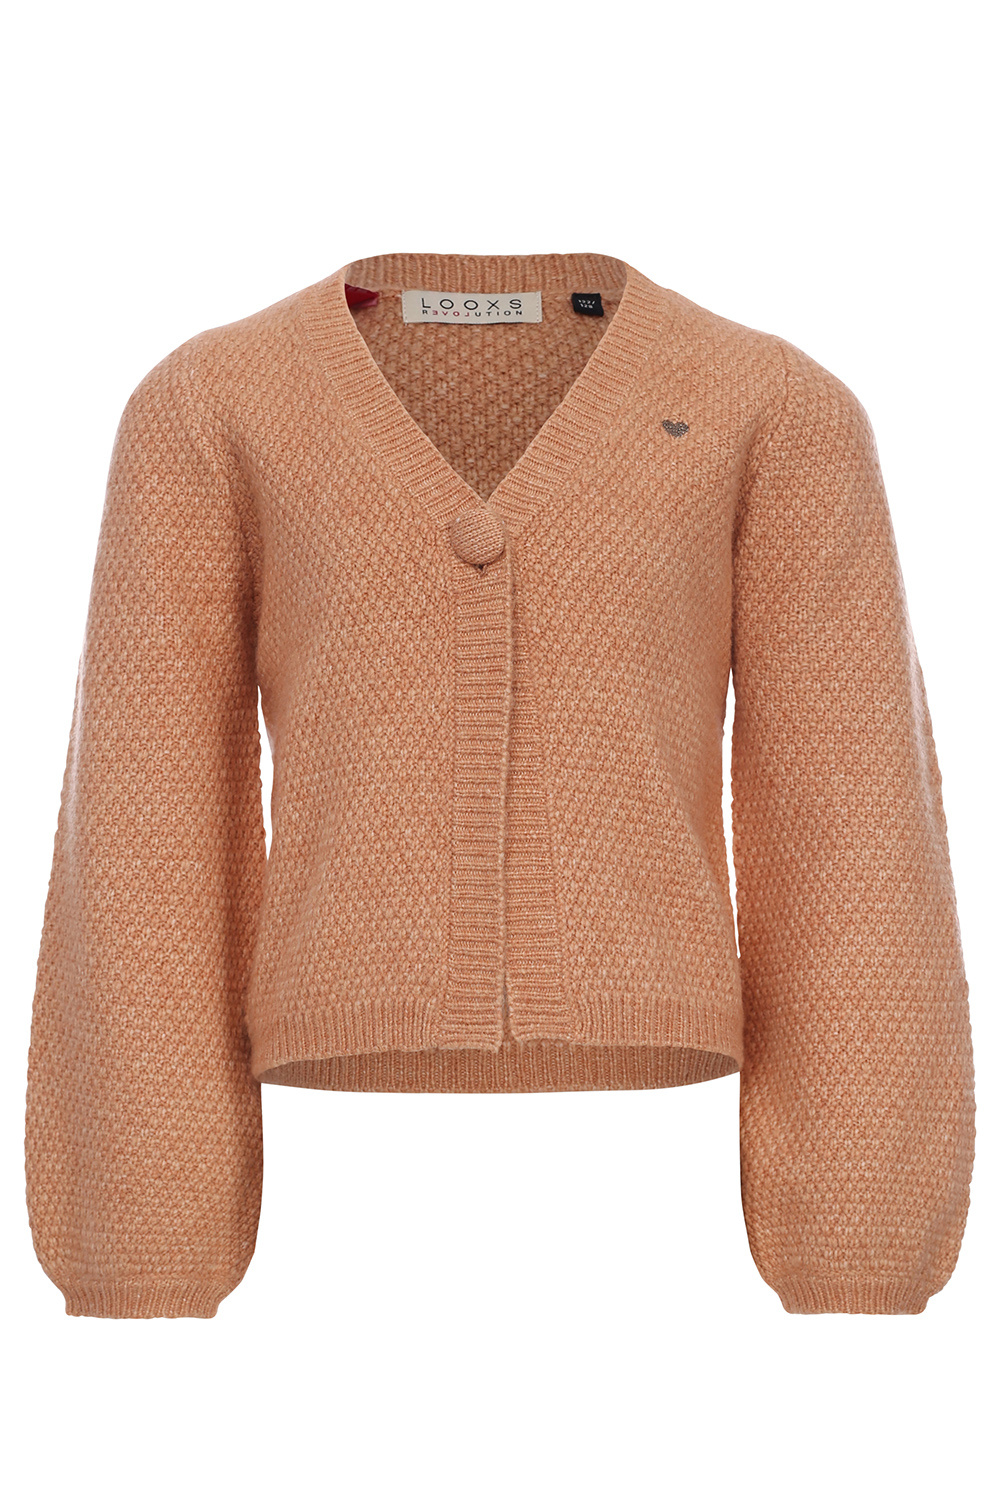 Looxs Revolution 2331-7305-541 Meisjes Sweater/Vest - Maat 104 - Veelkleurig Sands van Polyester